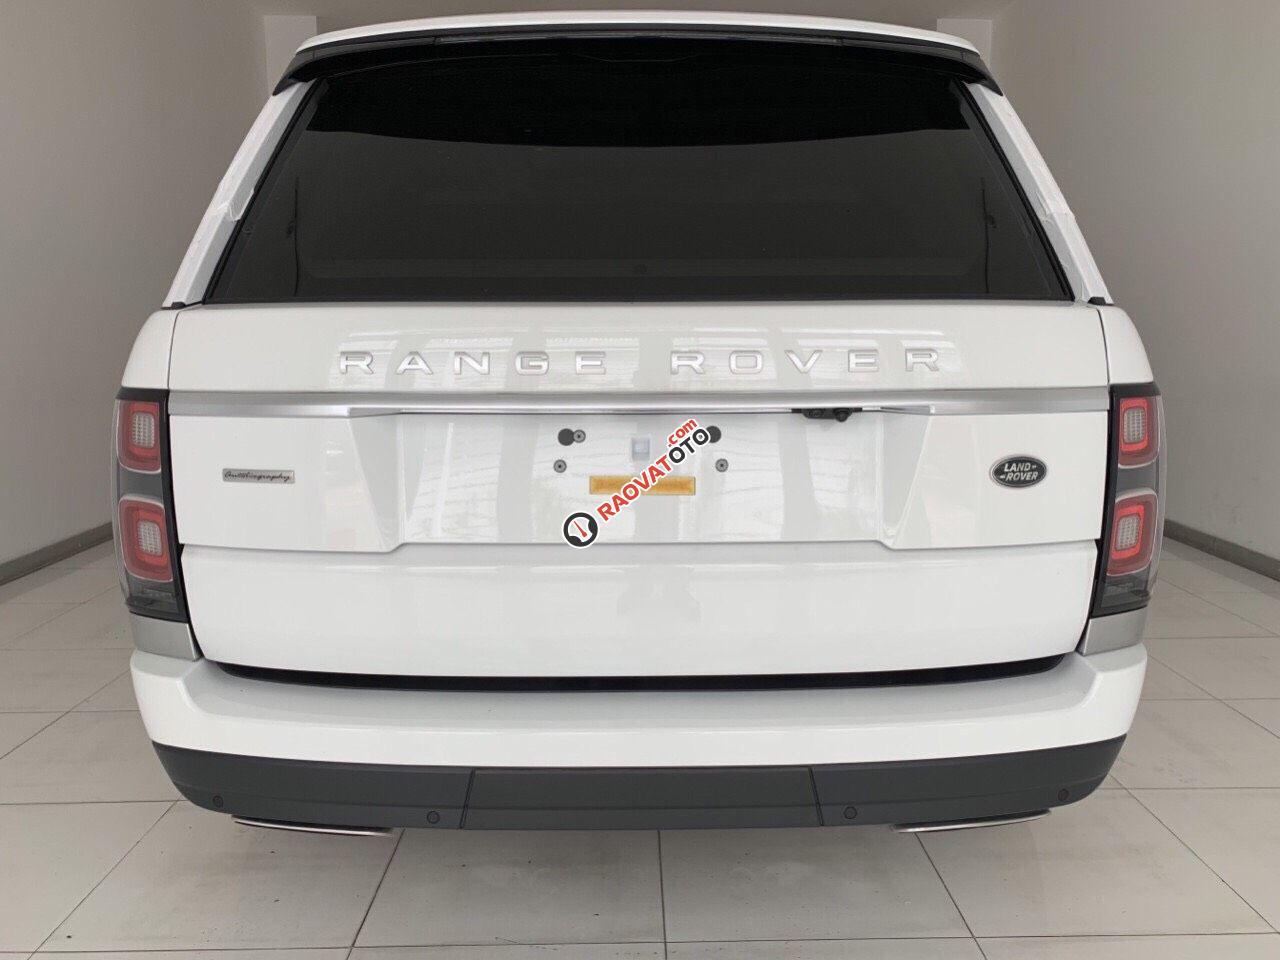 Bán xe LandRover Range Rover Autobiography Long 2019 - 2020 màu trắng, đen, xanh giao ngay 093 22222 53-6